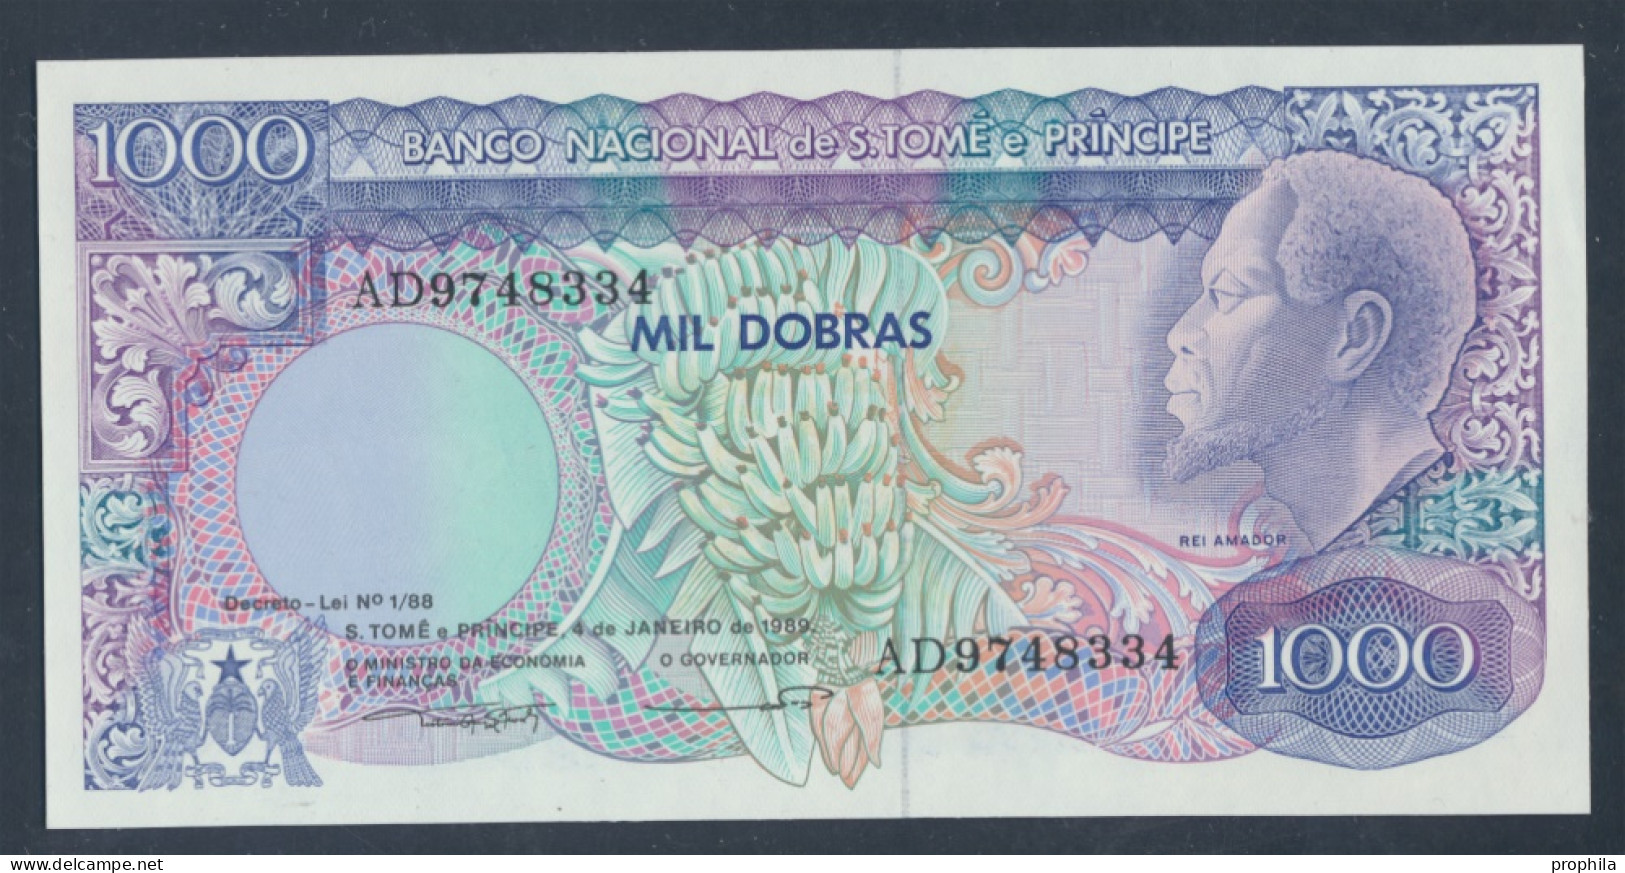 Sao Tome E Principe Pick-Nr: 62 Bankfrisch 1989 1.000 Dobras (9810629 - Sao Tome And Principe